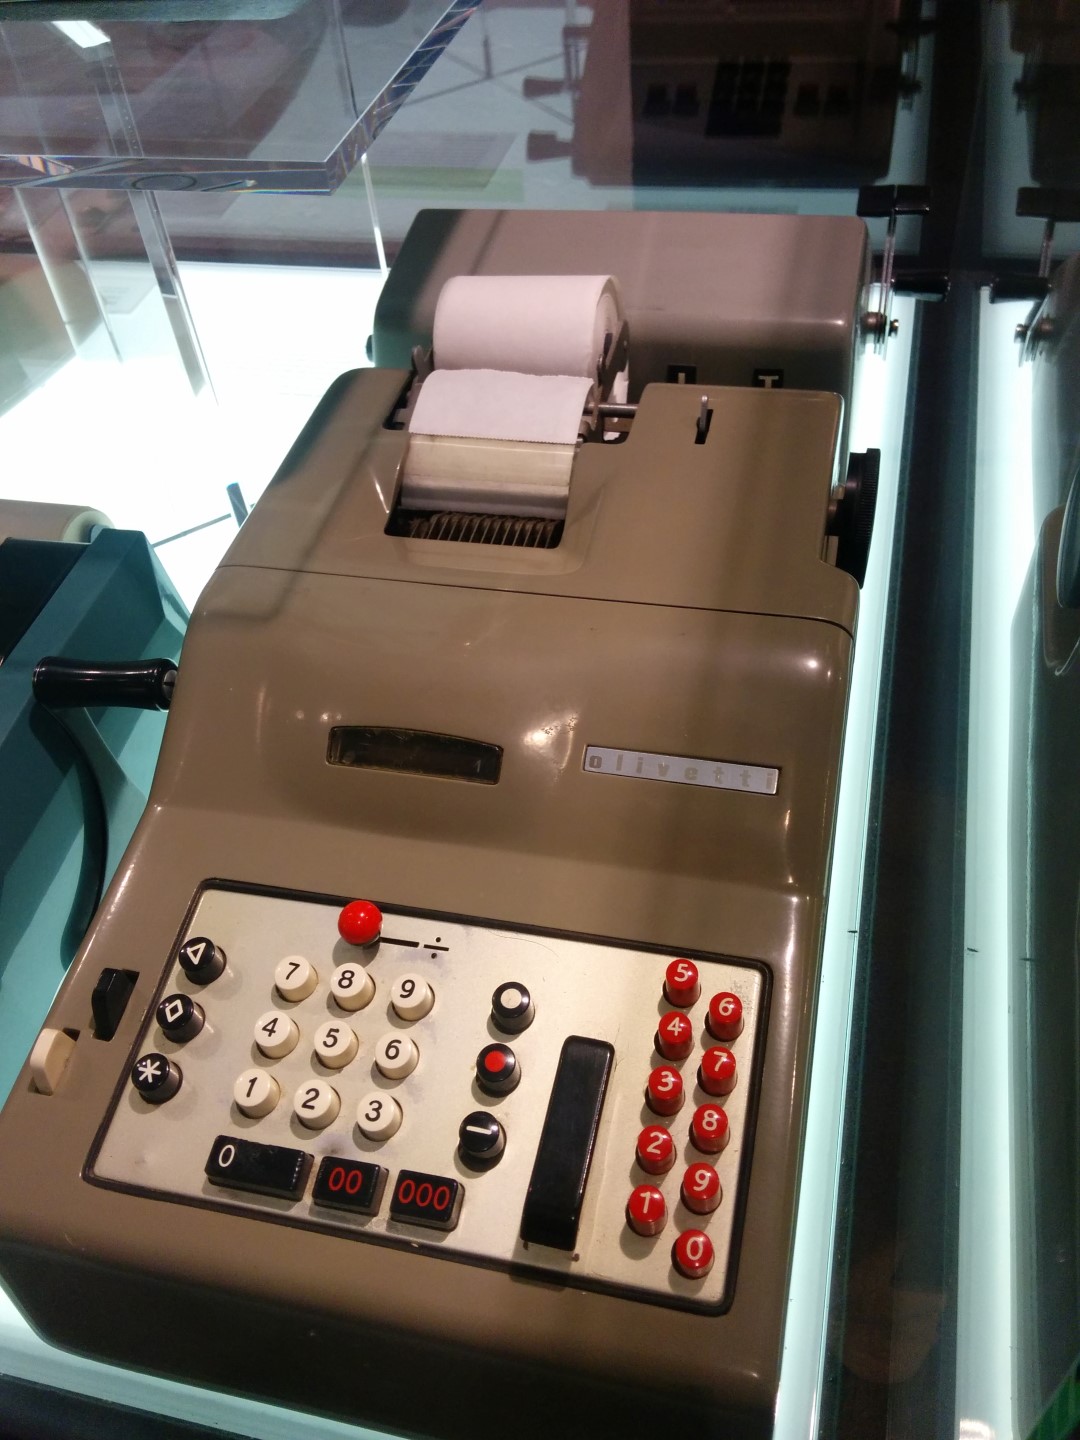 Olivetti's distinct design in desk calculators